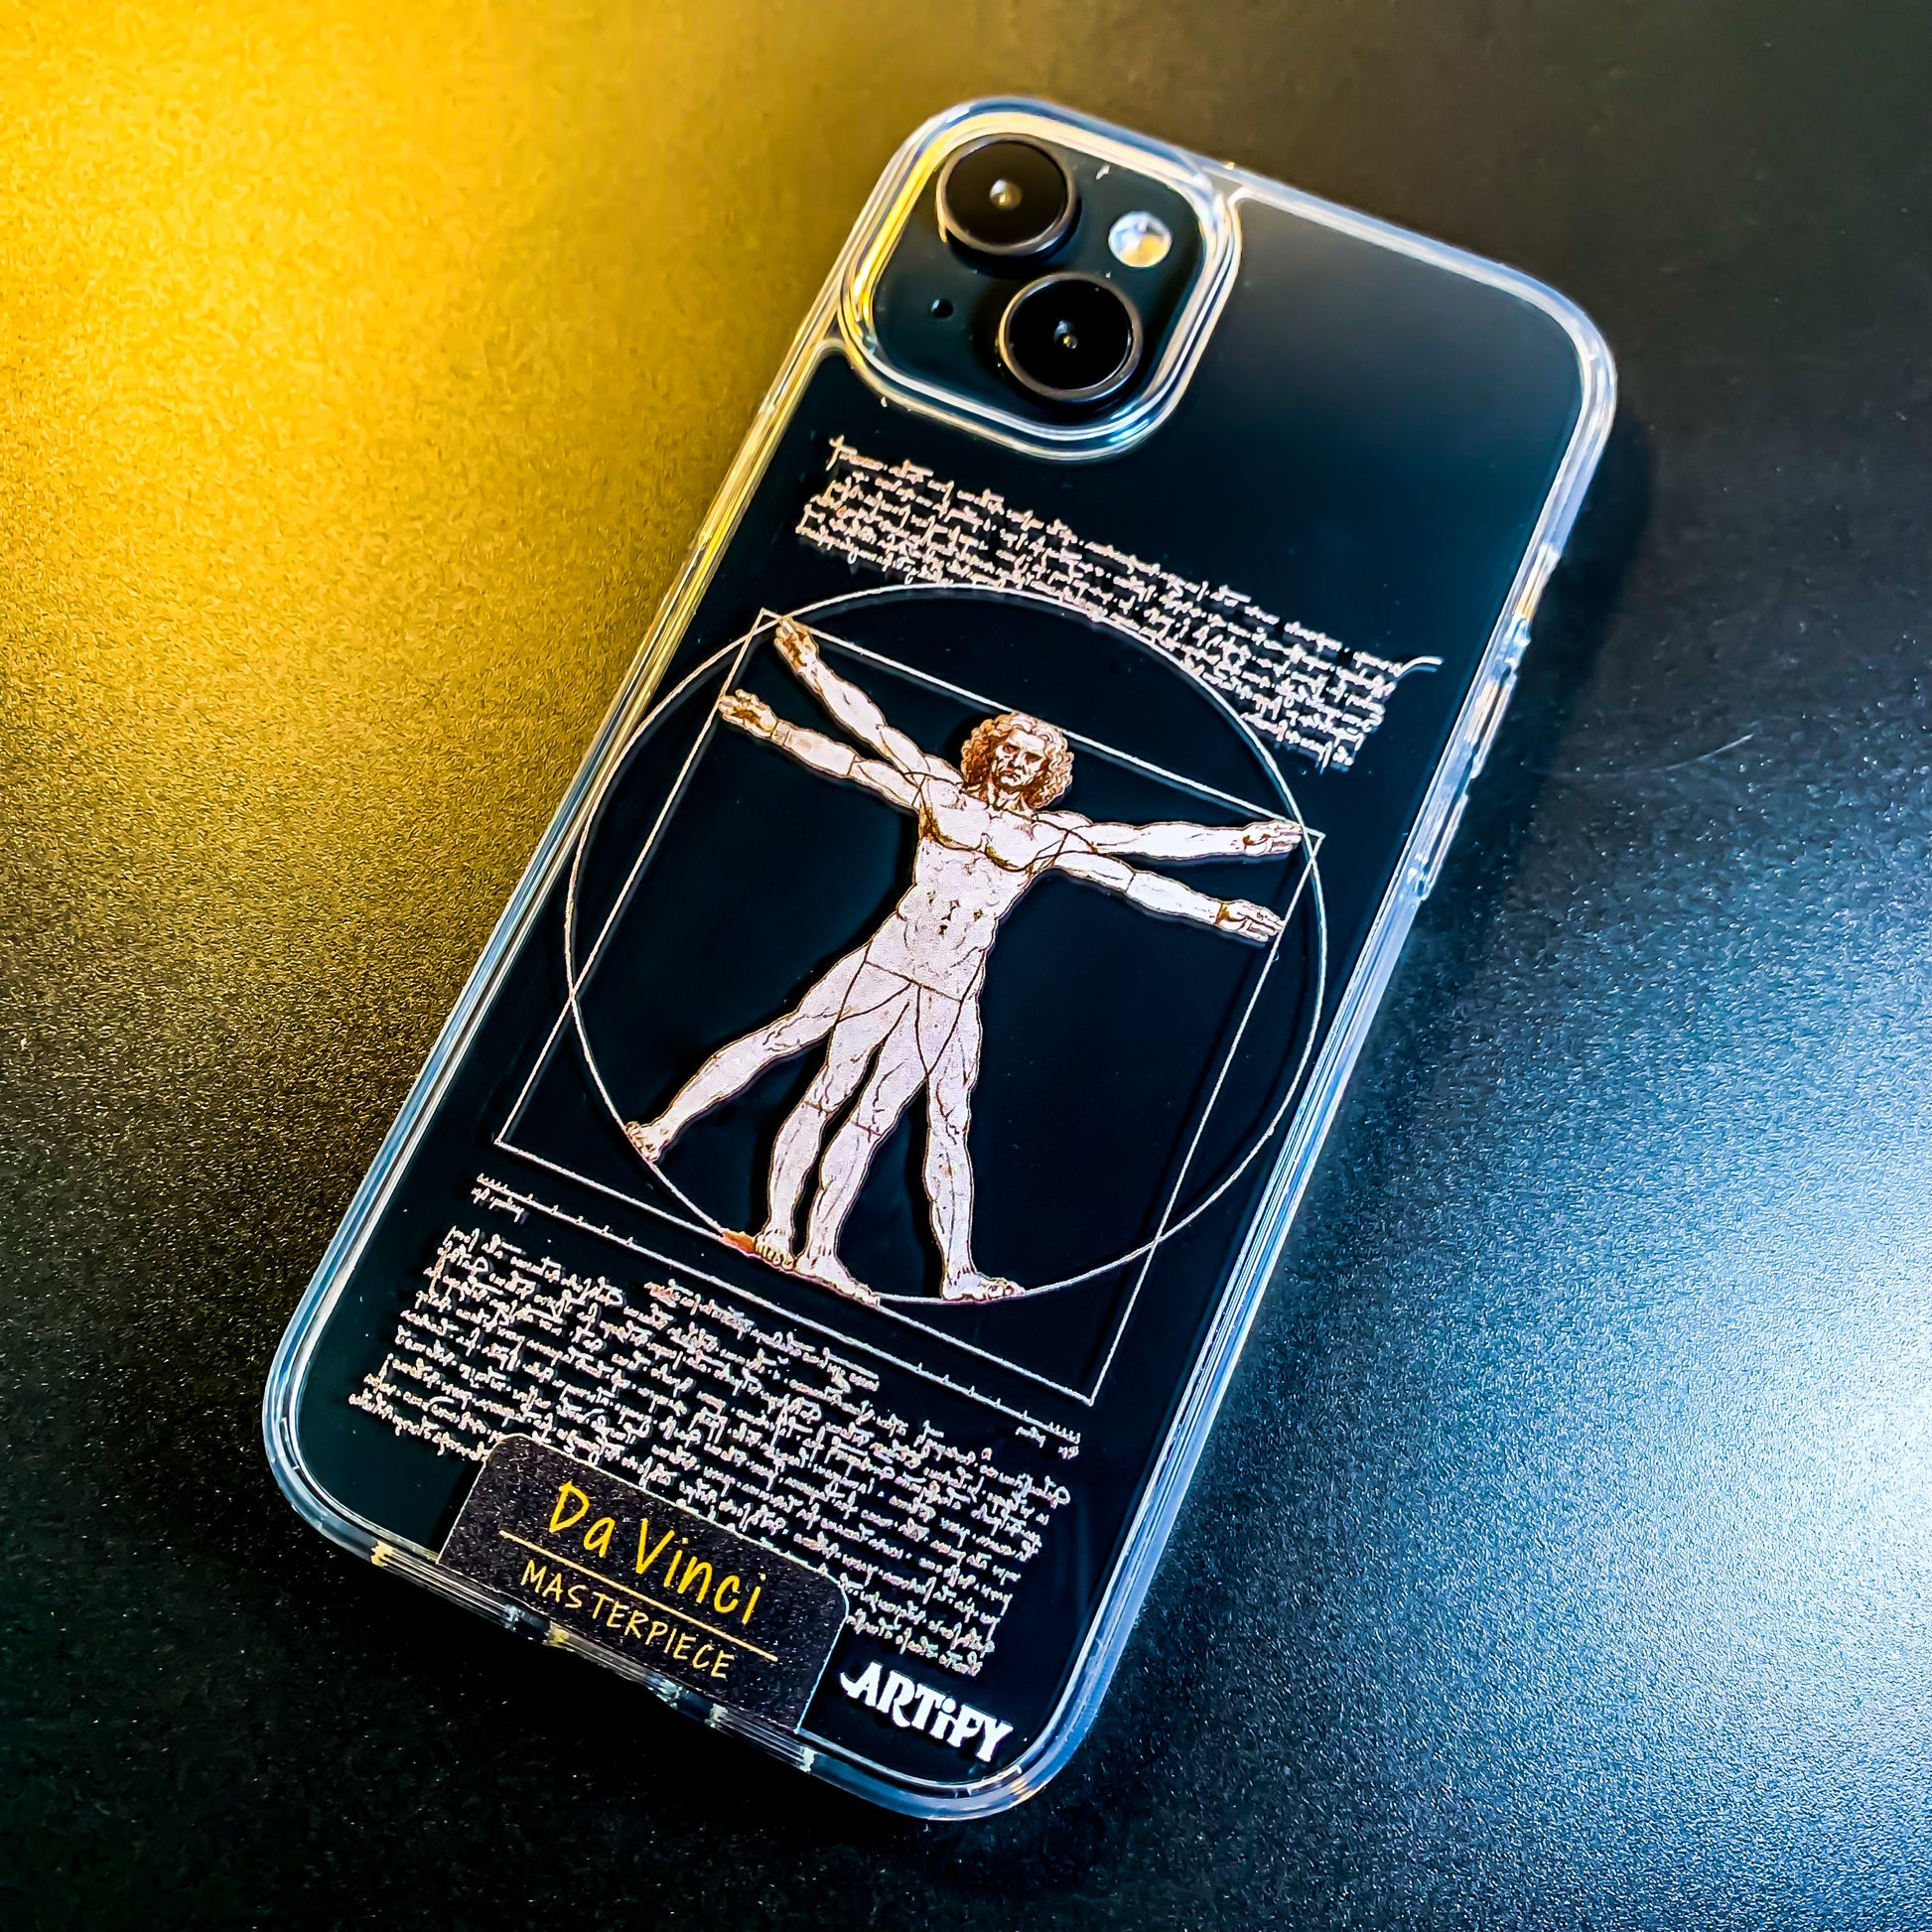 ウィトルウィウス的人体図 ダ・ヴィンチ iPhone ケース